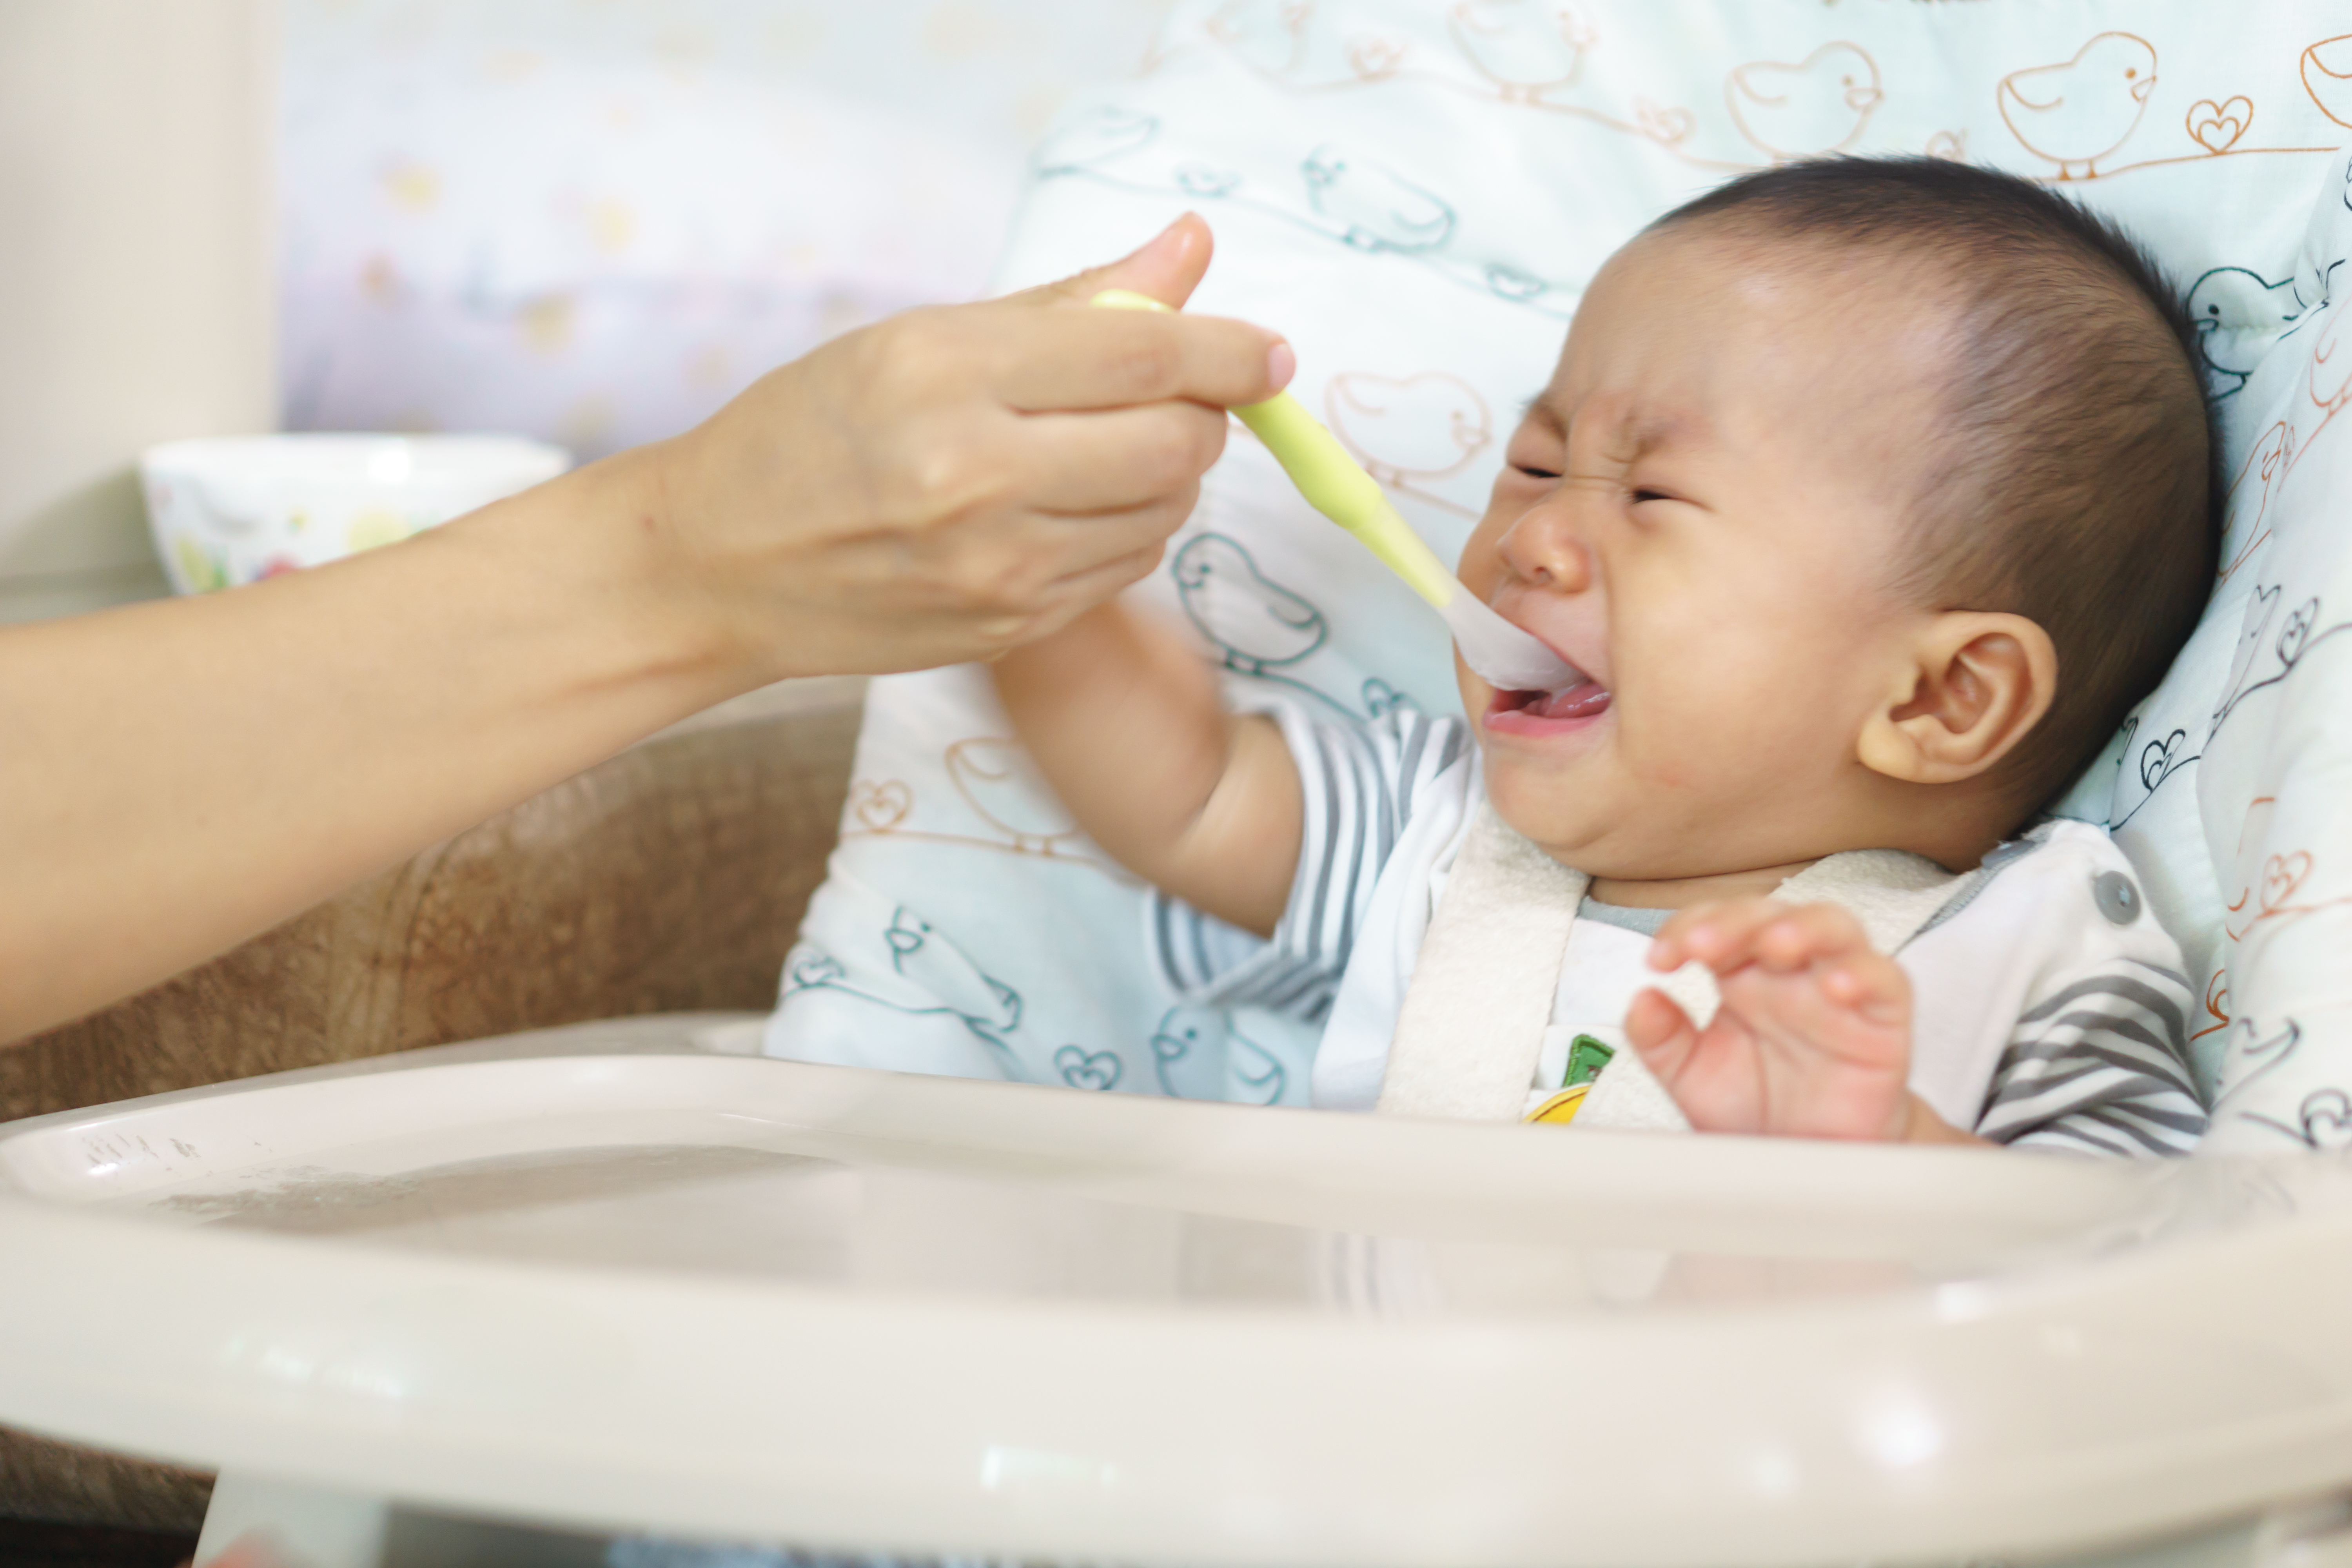 Bé suy dinh dưỡng có thể vì bố mẹ thiếu kiến thức nuôi dạy con, bé không được nuôi bằng sữa mẹ ở thời kỳ 4-6 tháng đầu sau khi sinh